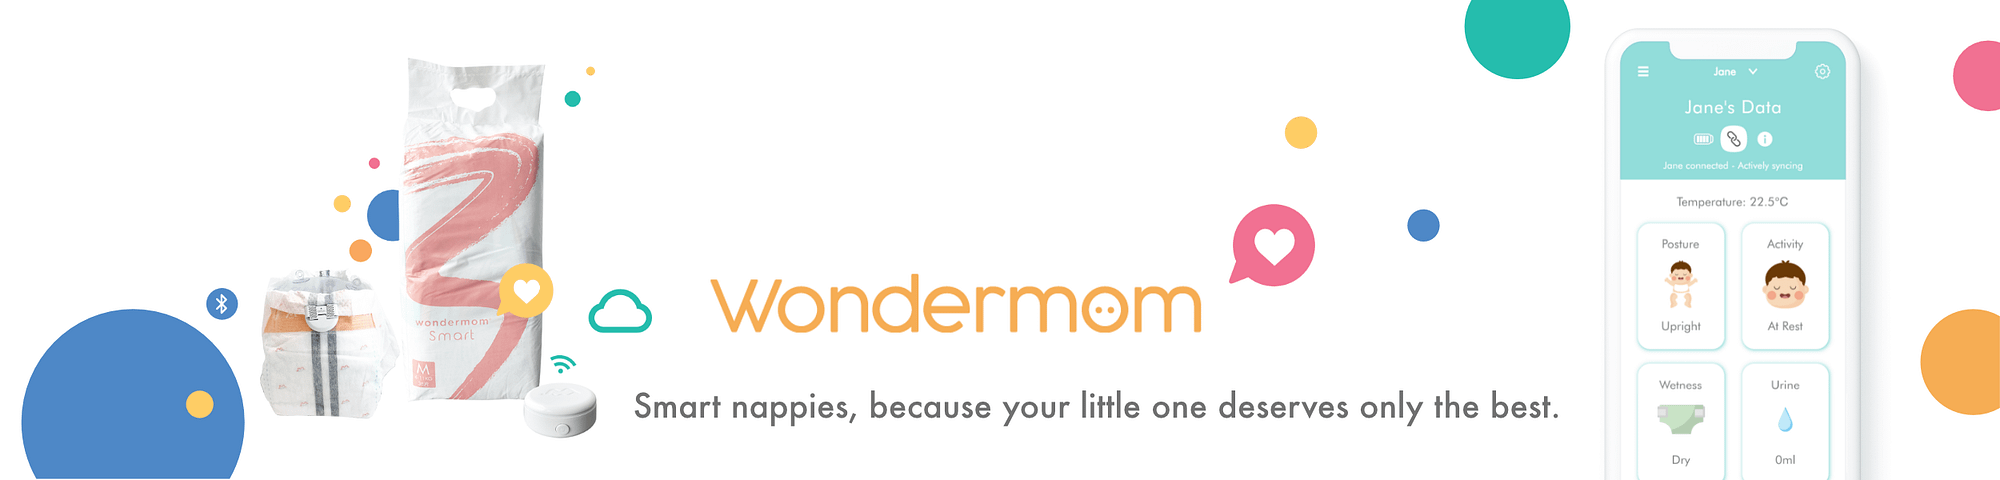 Wondermom-shop-banner